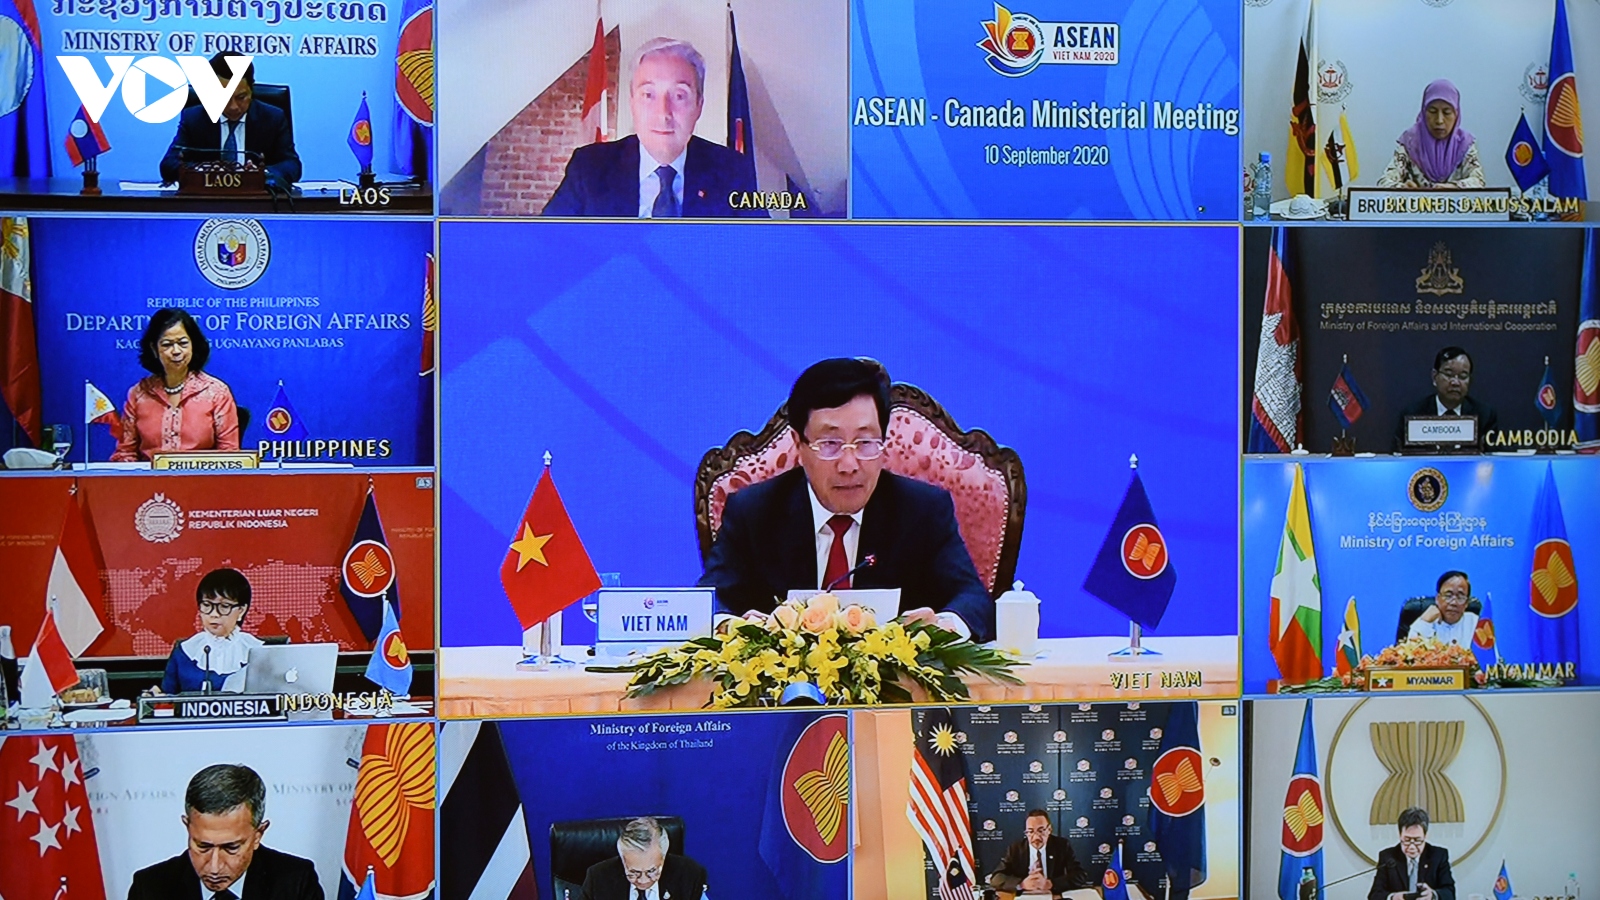 Khâu tổ chức các hội nghị trực tuyến ASEAN của Việt Nam được đánh giá cao